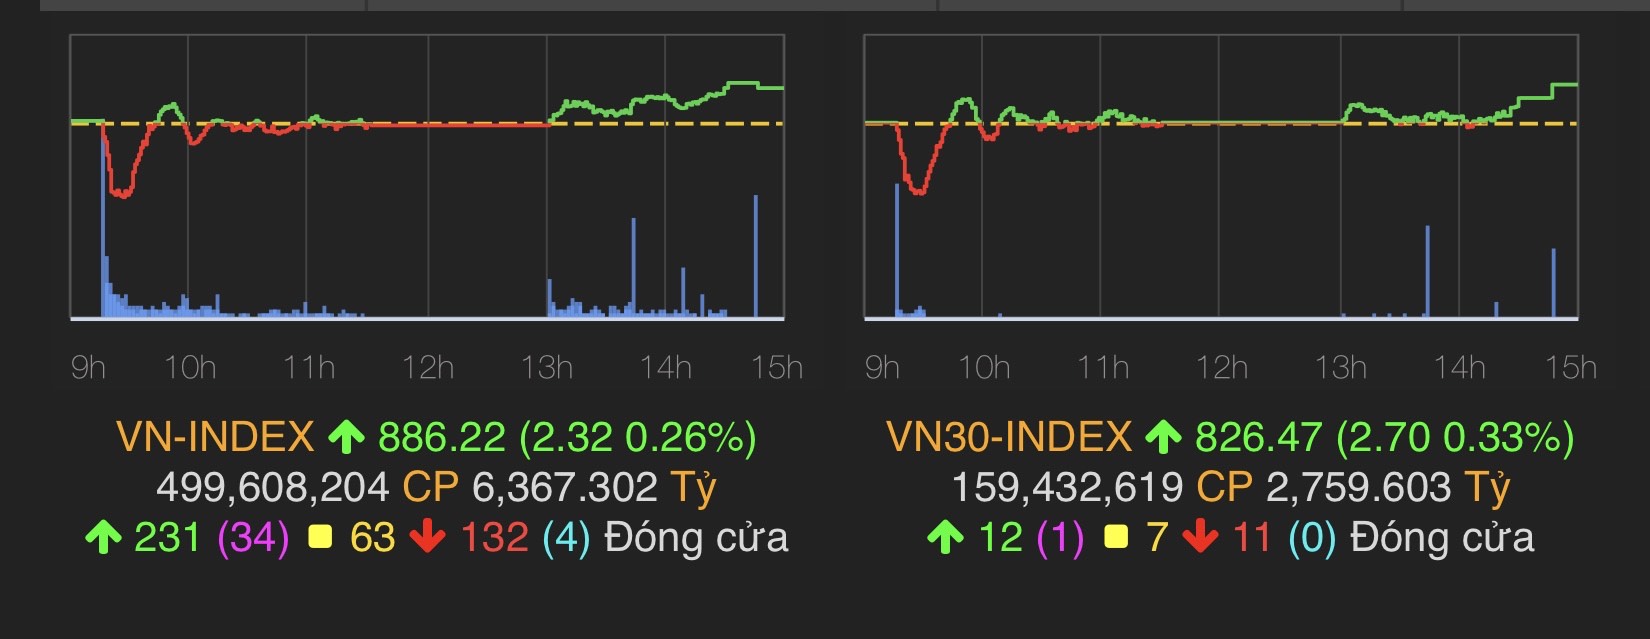 VN-Index tăng 2,32 điểm (0,26%) lên 886,22 điểm.